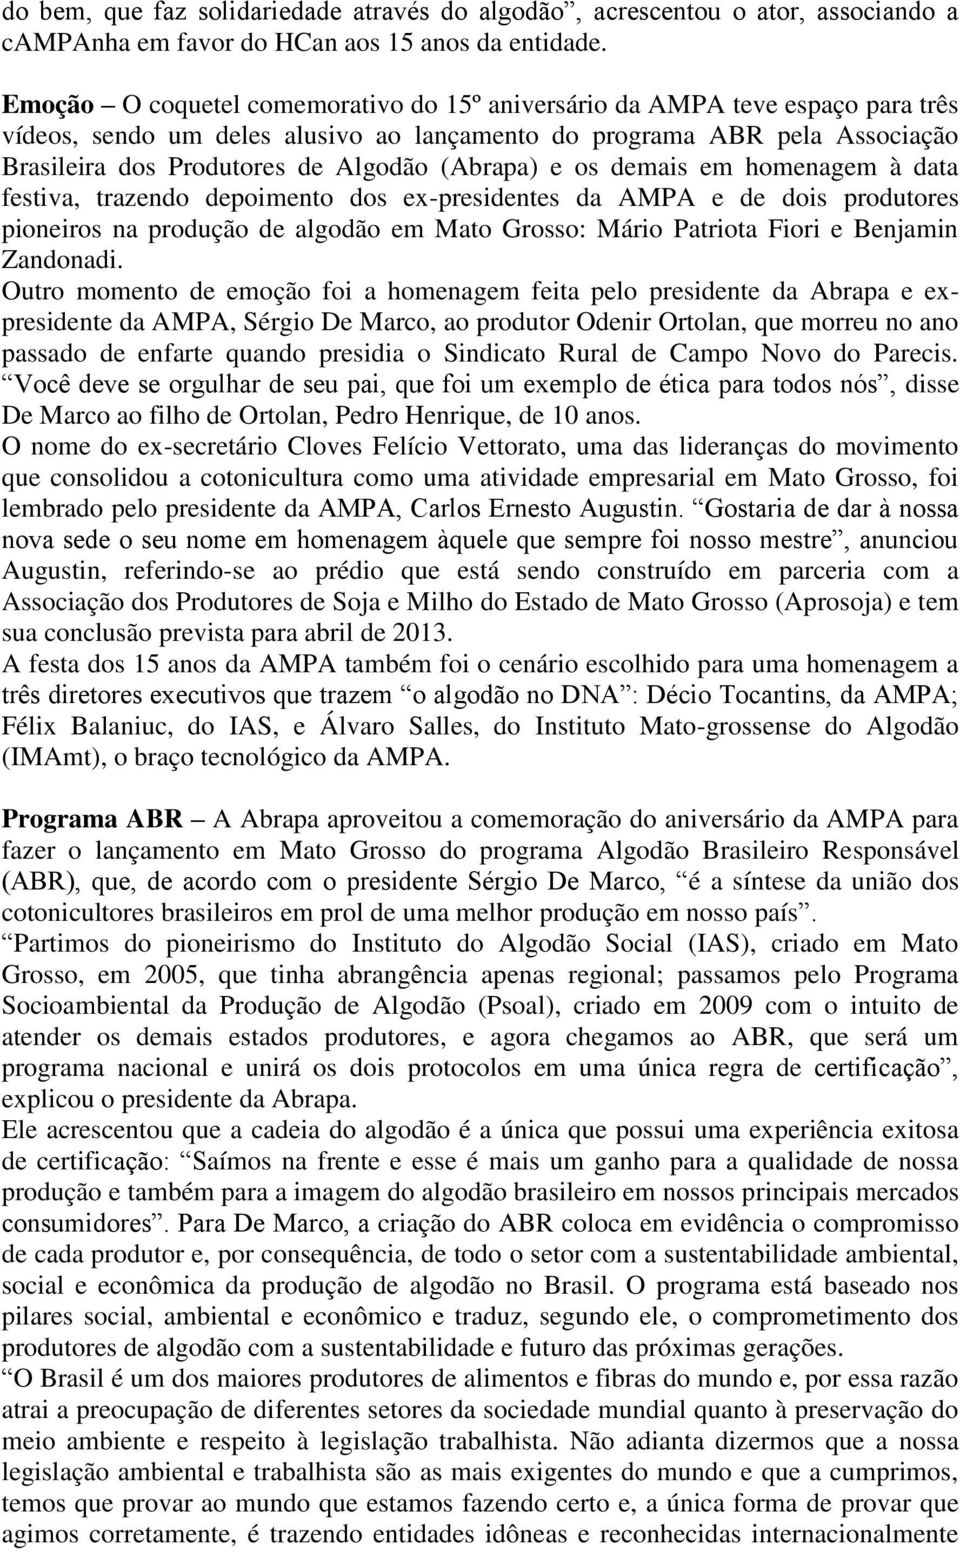 (Abrapa) e os demais em homenagem à data festiva, trazendo depoimento dos ex-presidentes da AMPA e de dois produtores pioneiros na produção de algodão em Mato Grosso: Mário Patriota Fiori e Benjamin